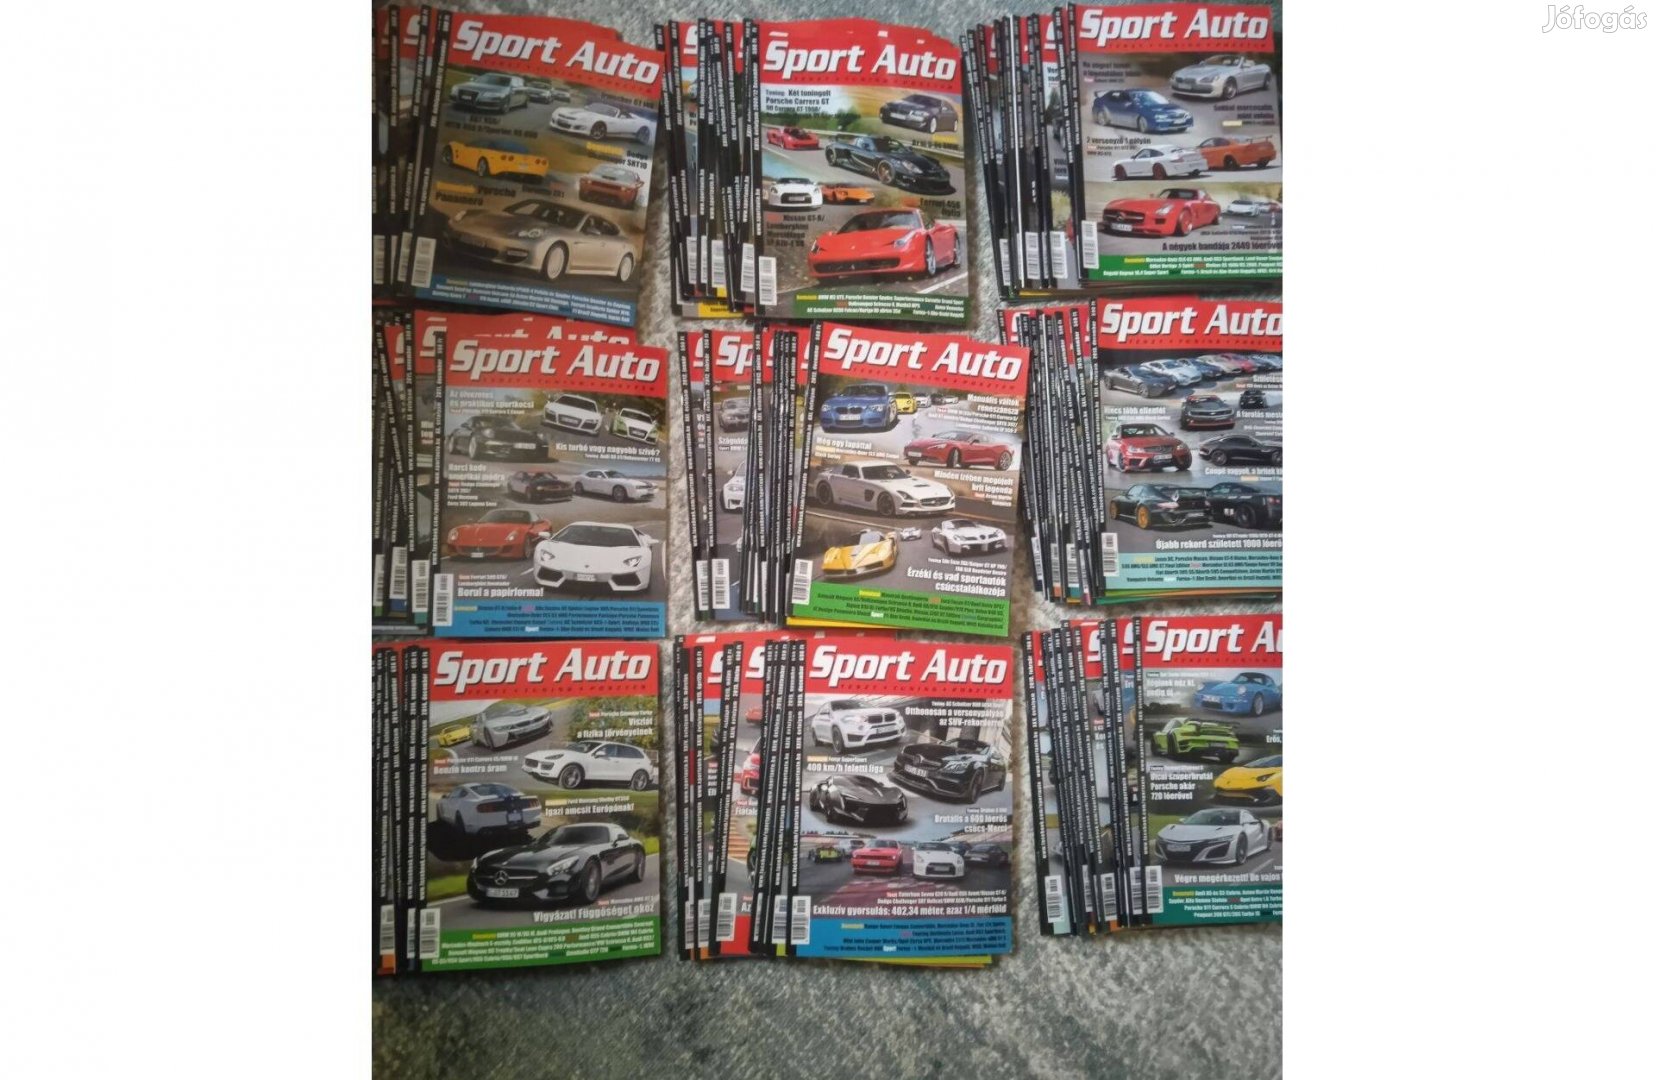 Eladó 2008-2016 közötti Sport Auto Magazin összes száma (108db)